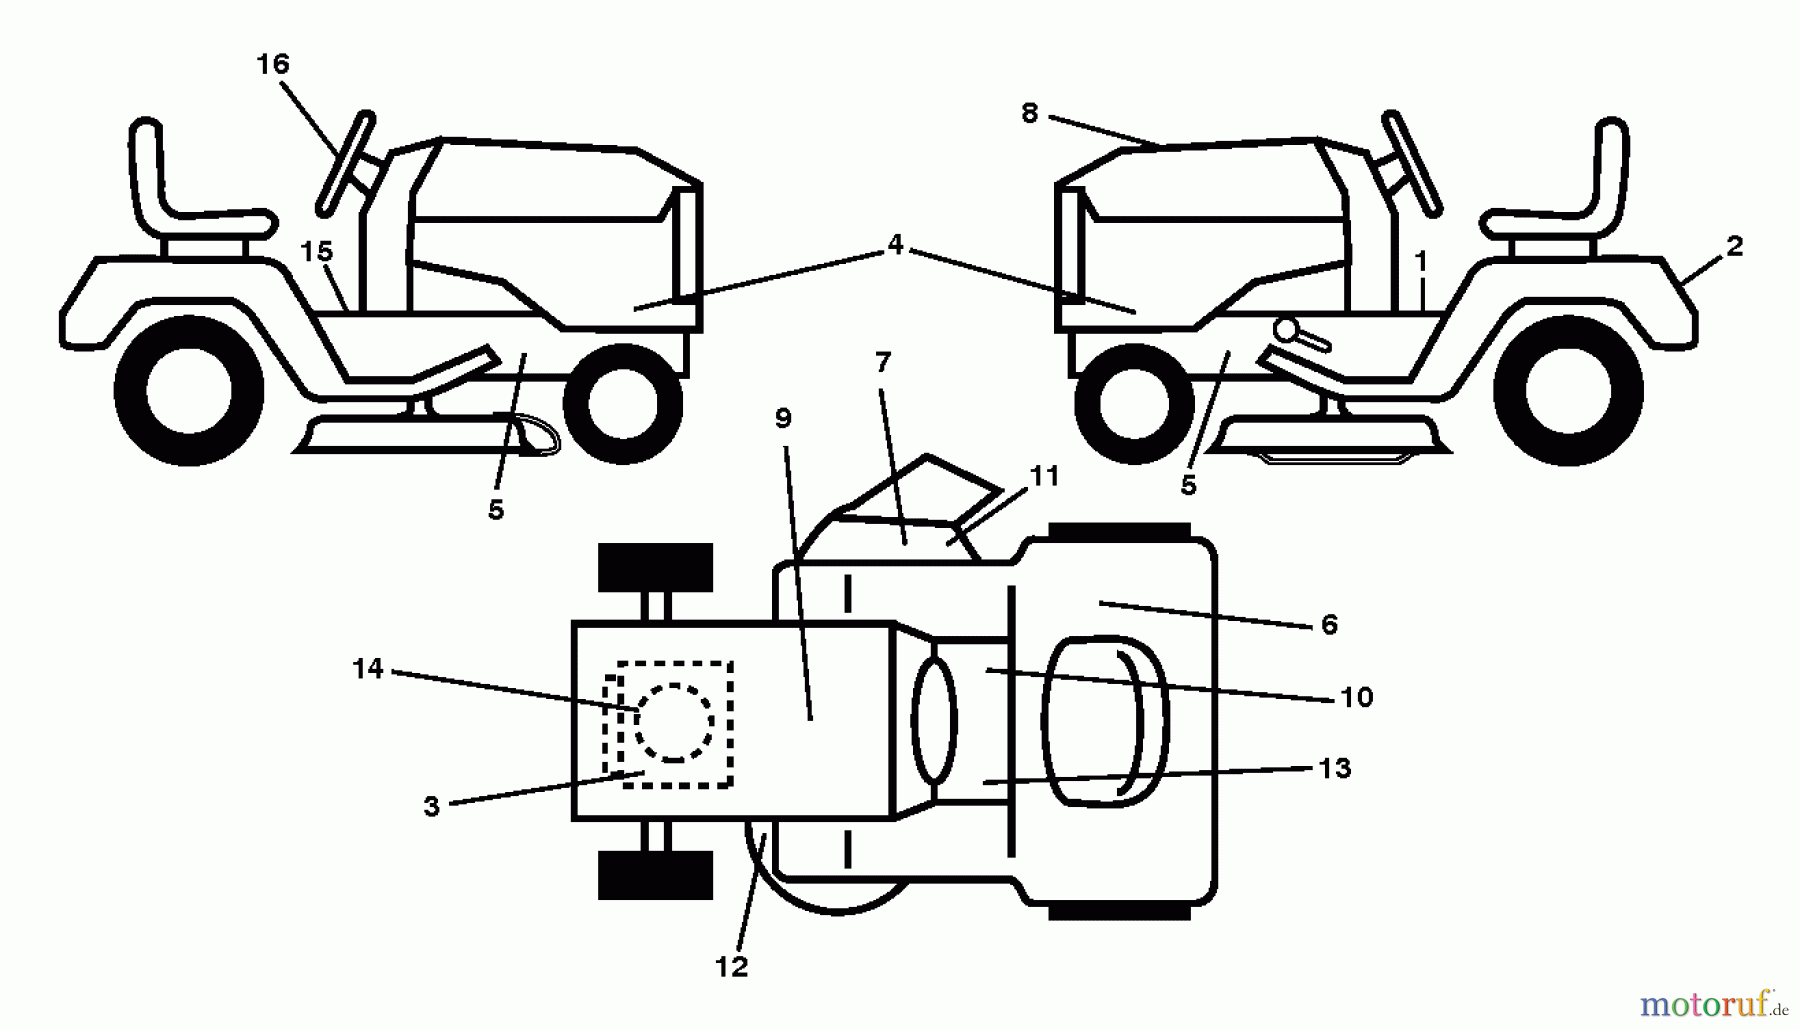  Jonsered Rasen  und Garten Traktoren LT2317 A2 (96041026000) - Jonsered Lawn & Garden Tractor (2011-11) DECALS